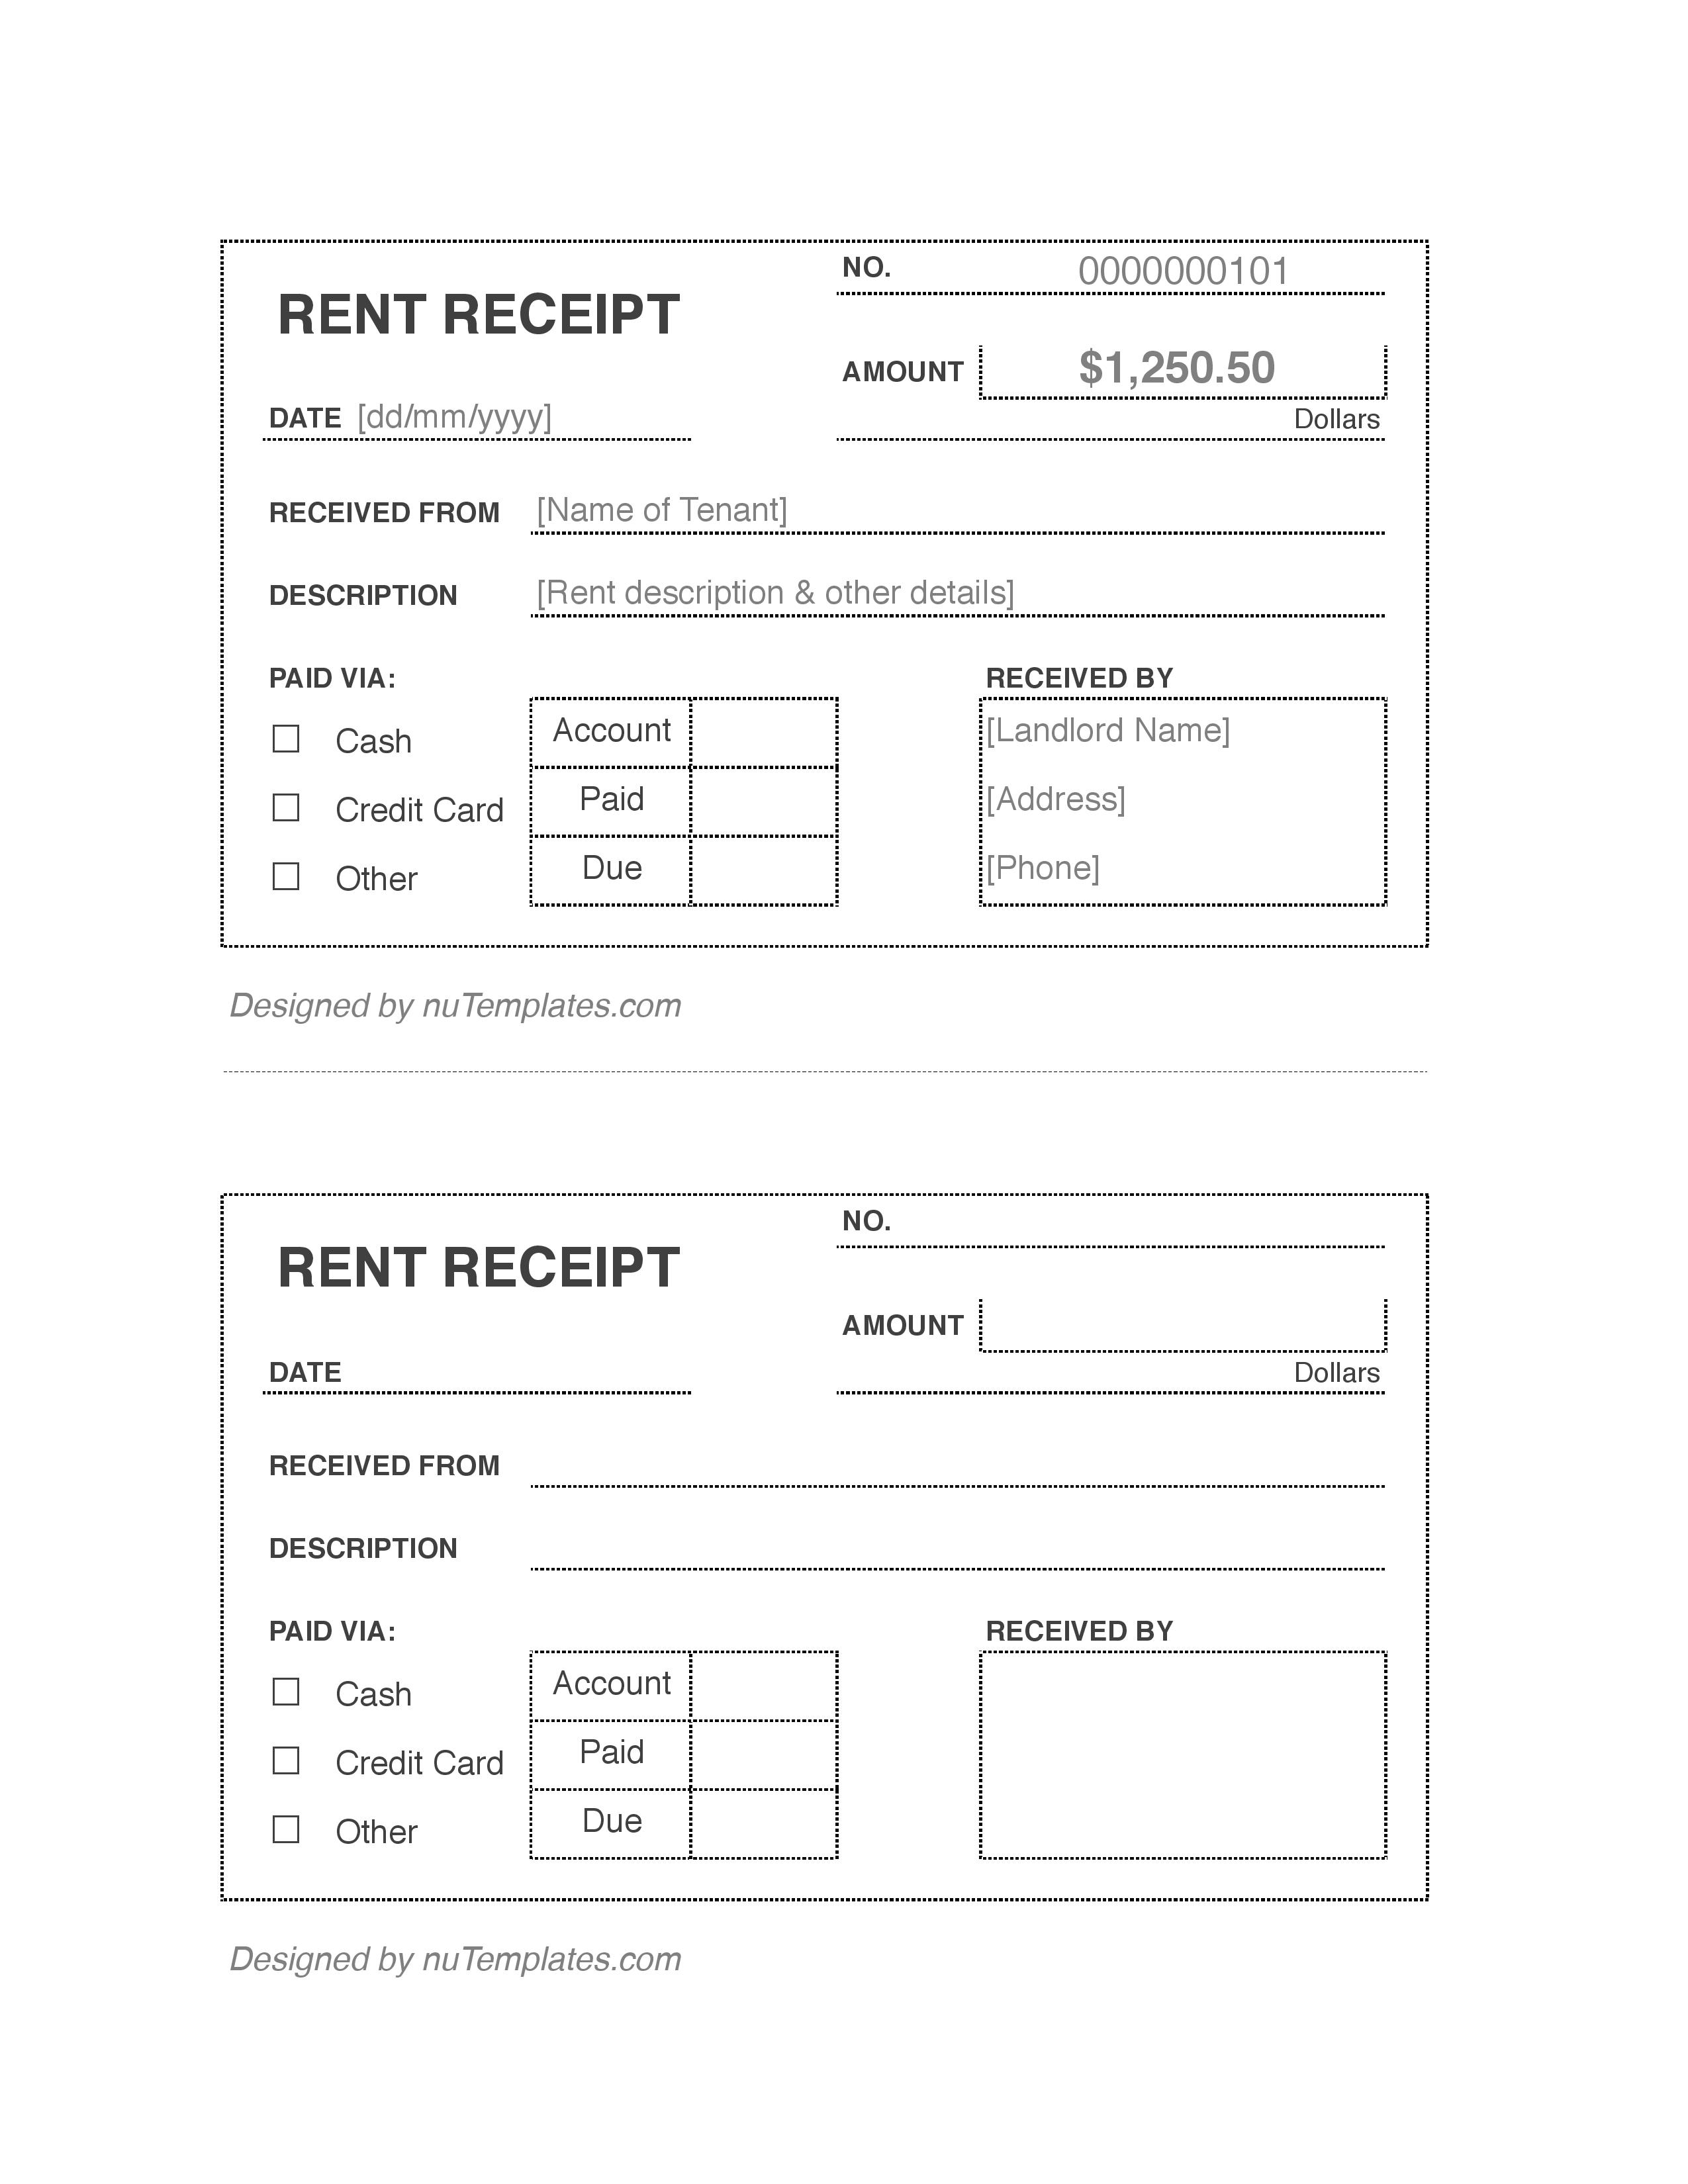 rent-receipt-jpg